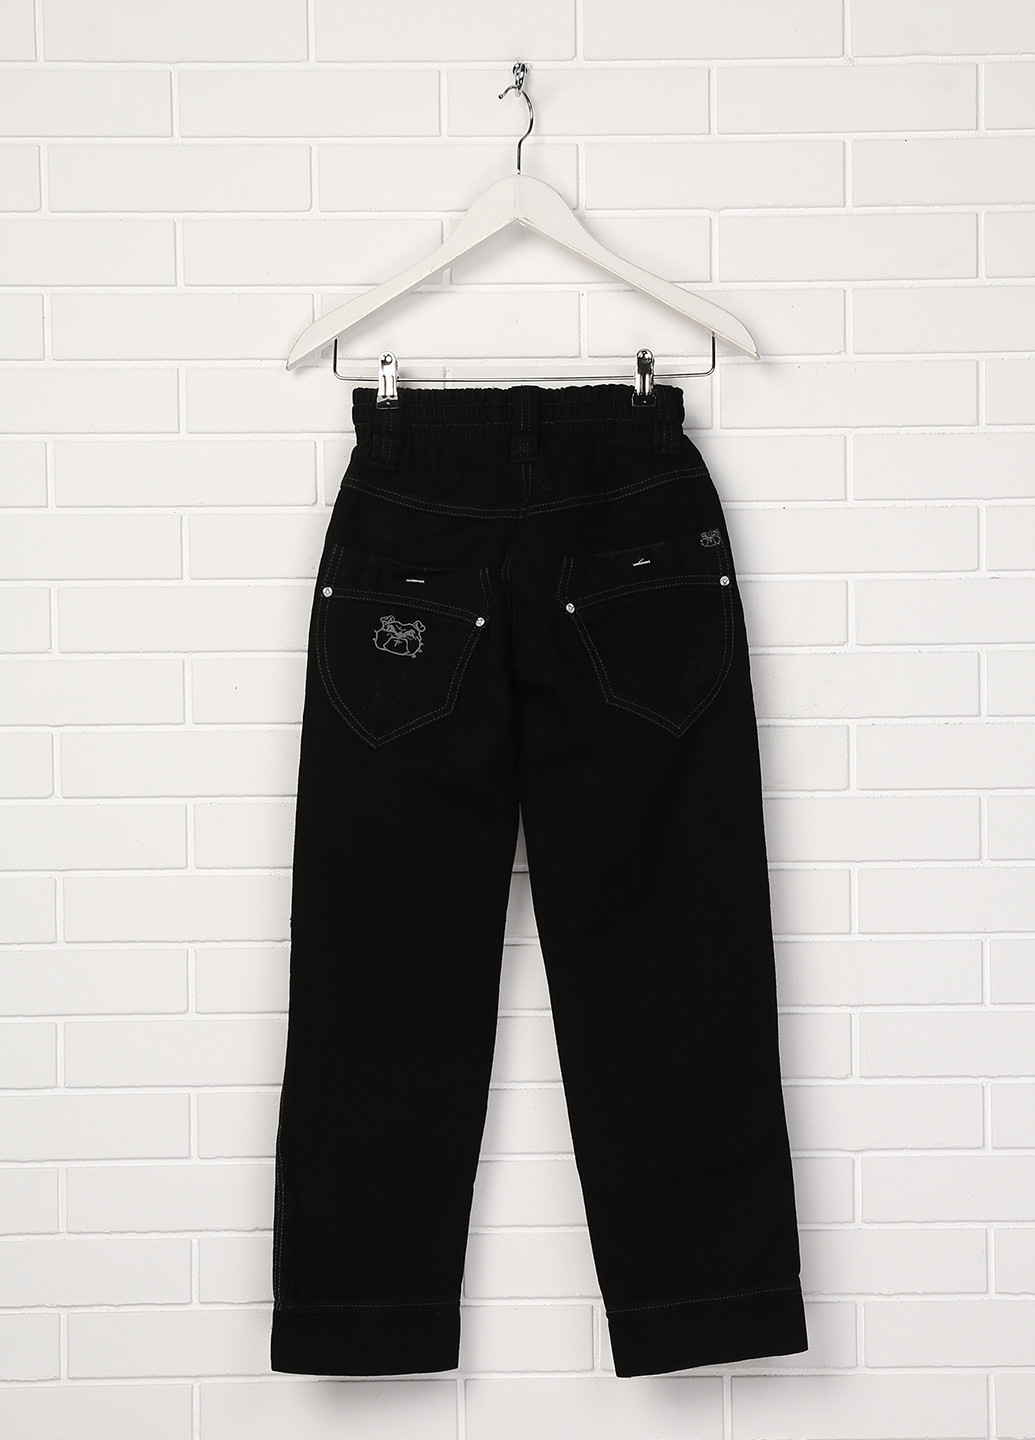 Черные летние джинсы Puledro